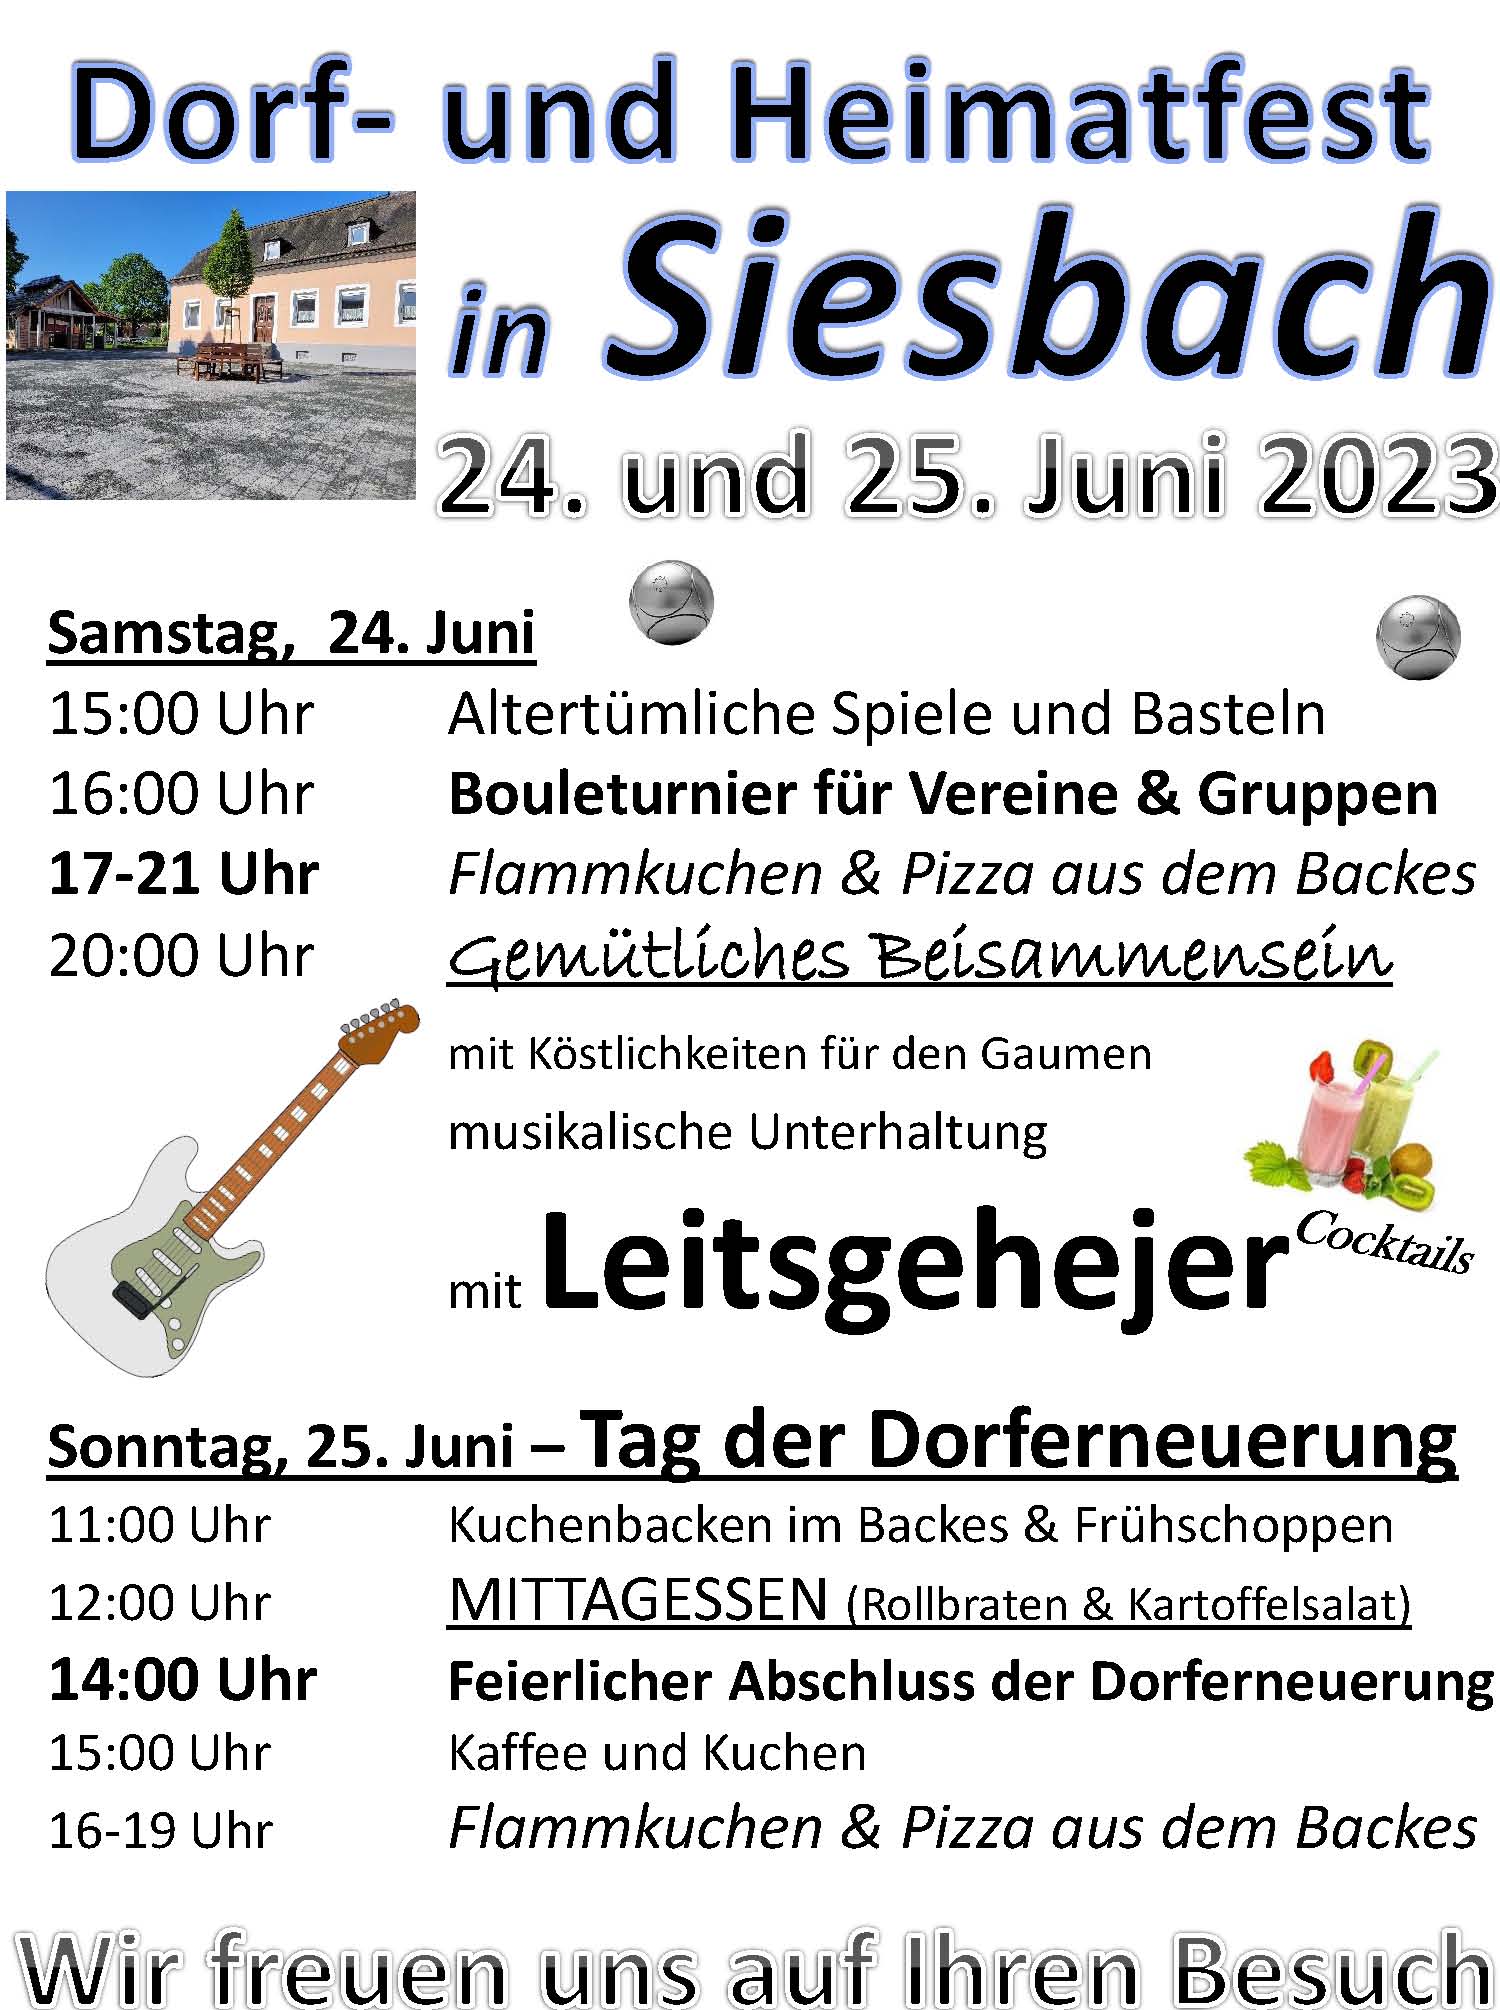 orf- und Heimatfest Siesbach Juni 2023